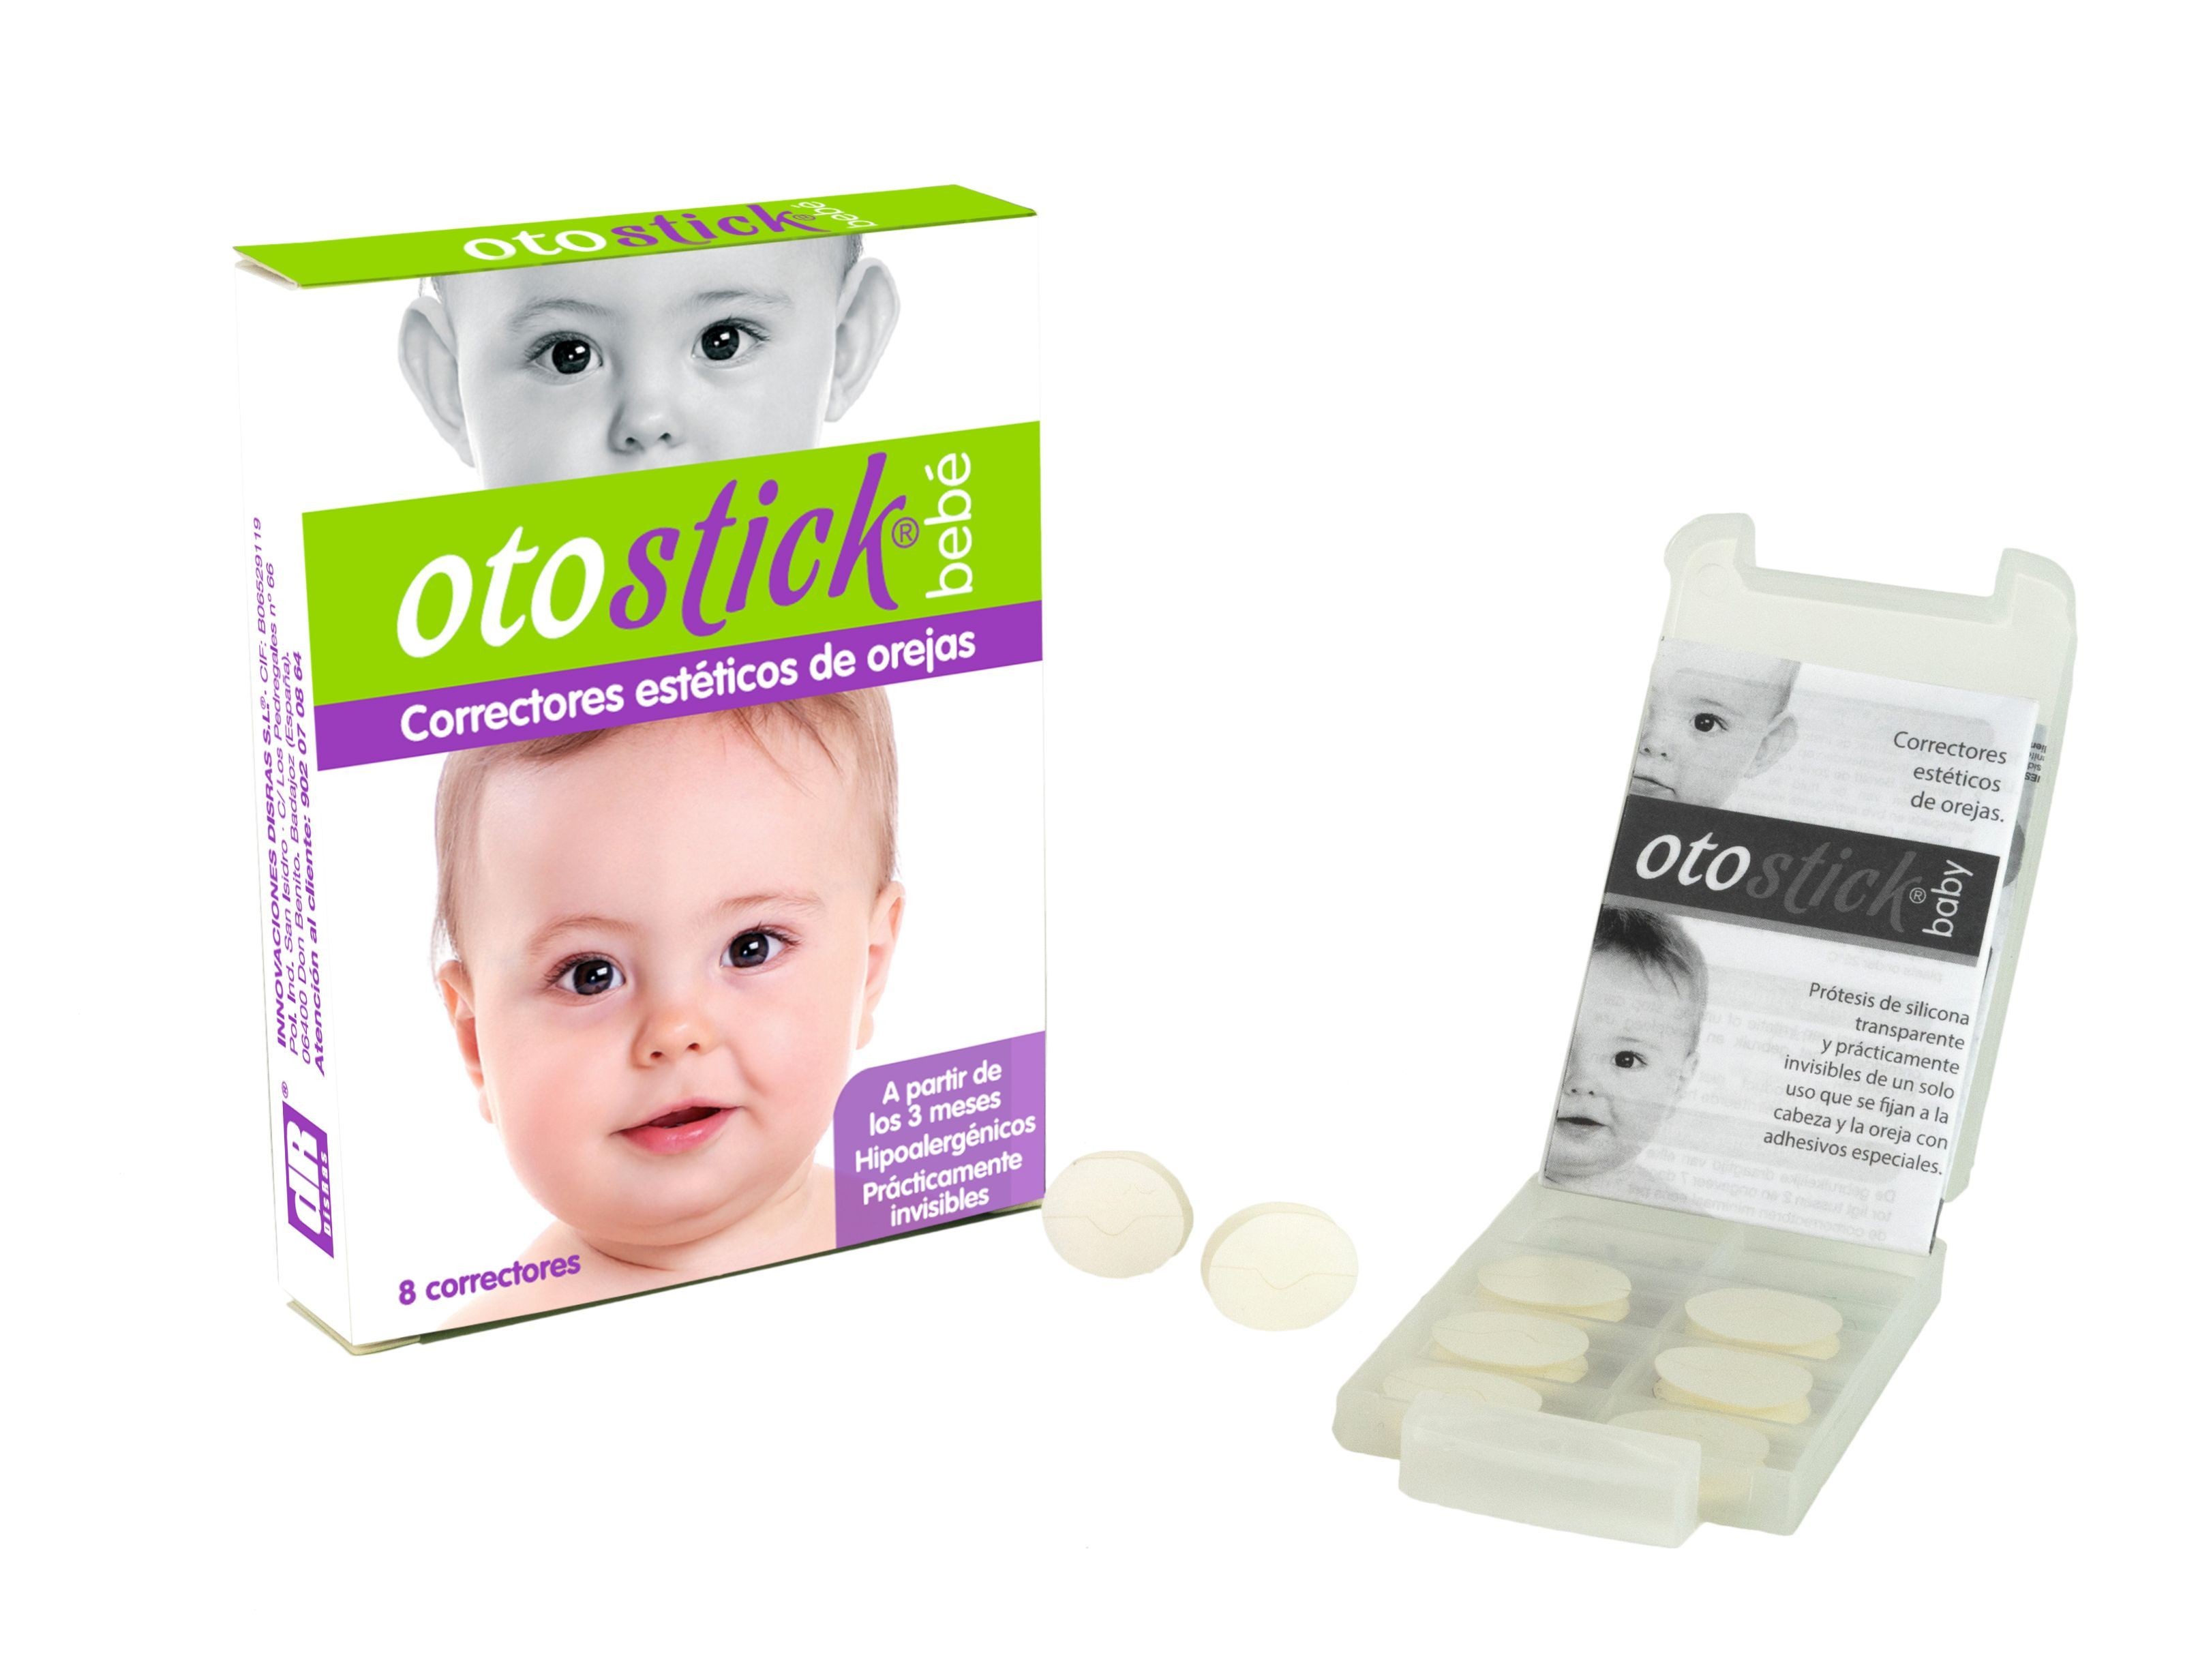 Cómo colocar Otostick bebe y adulto 